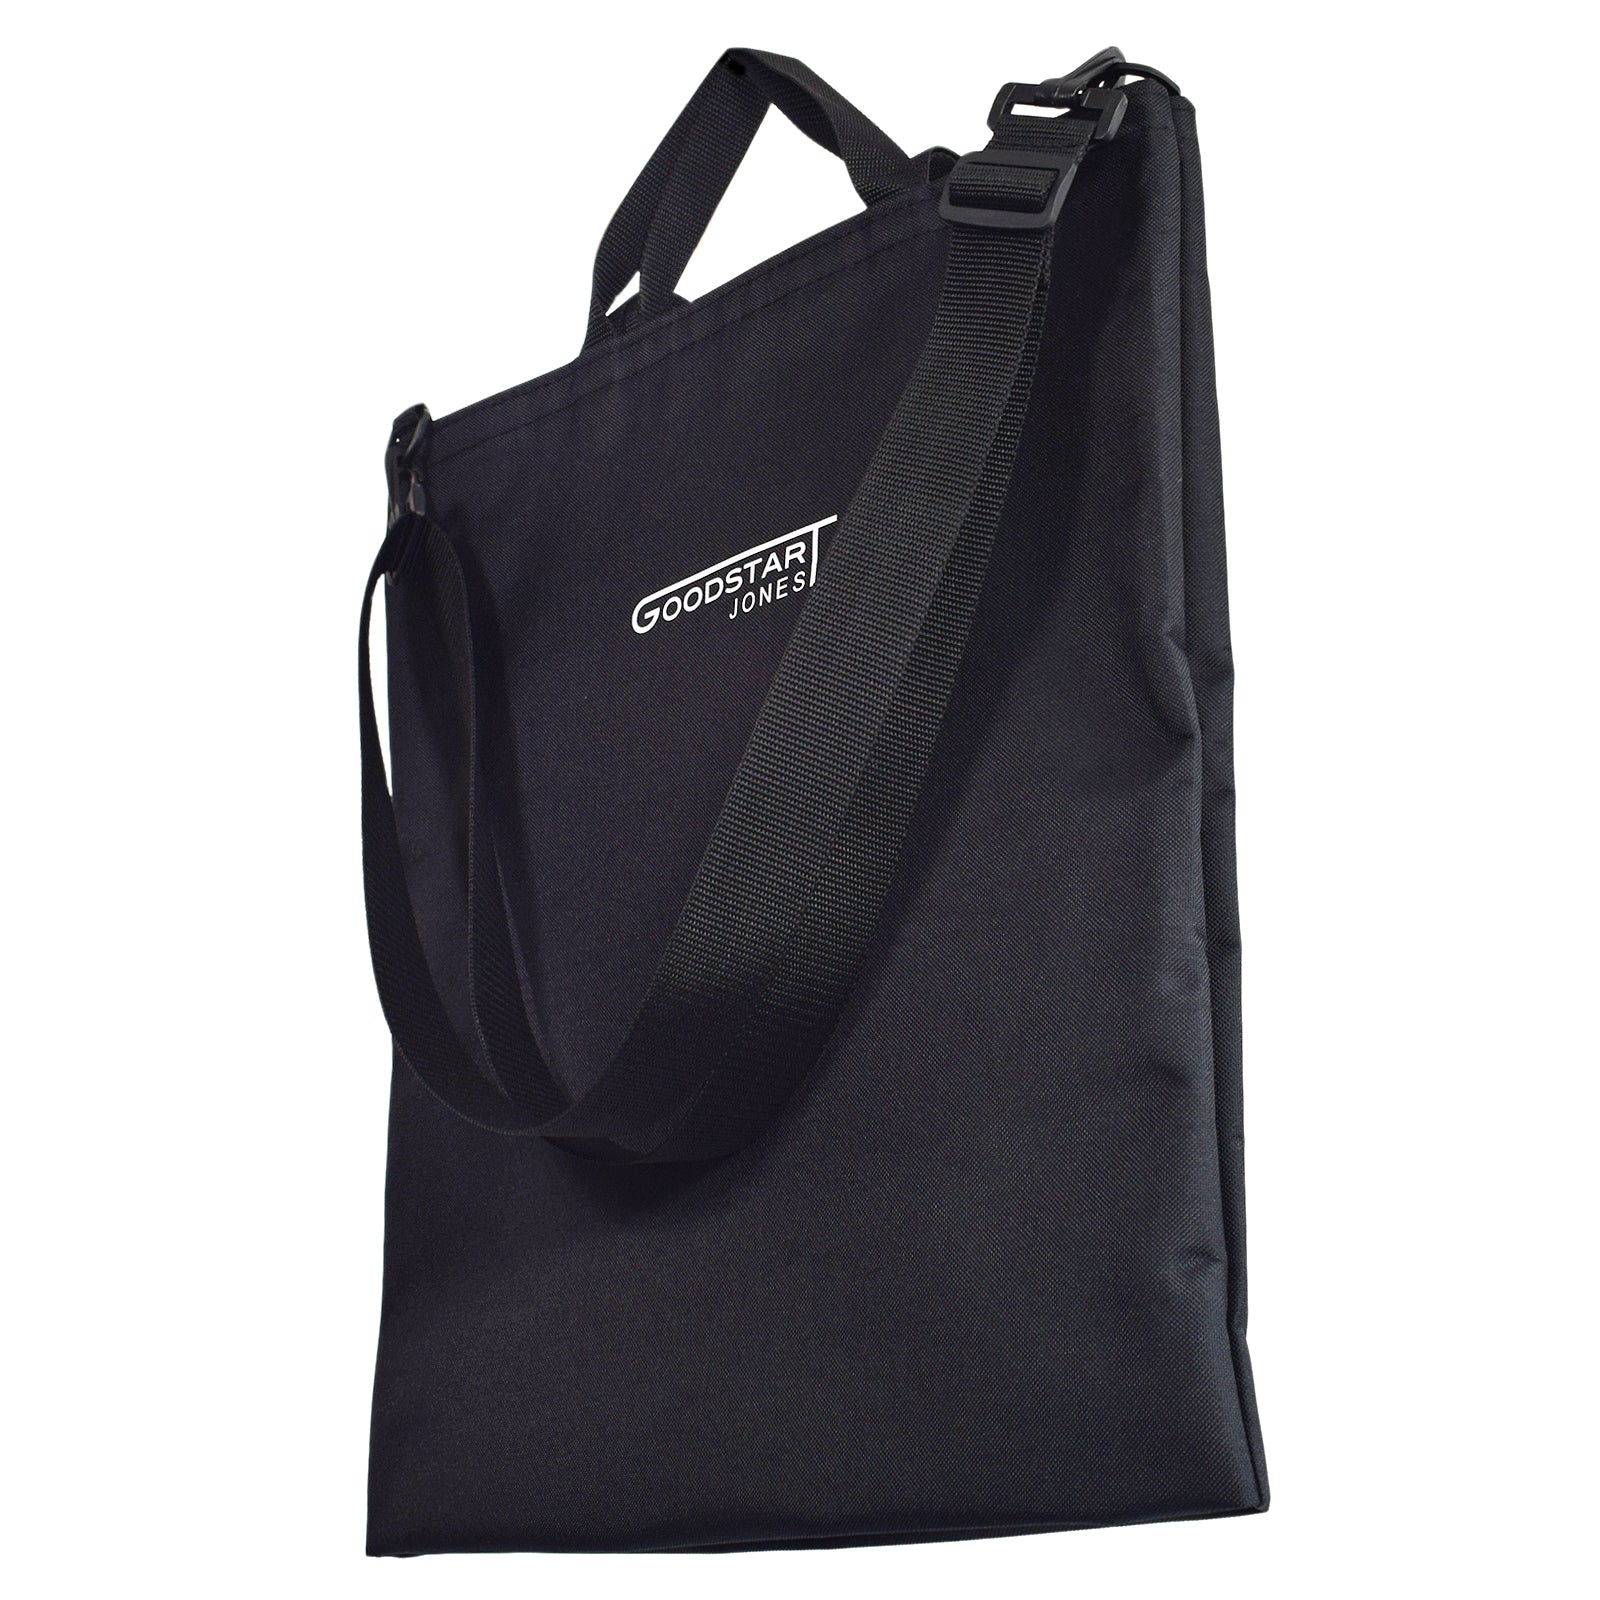 Goodstart Jones Black tote bag 